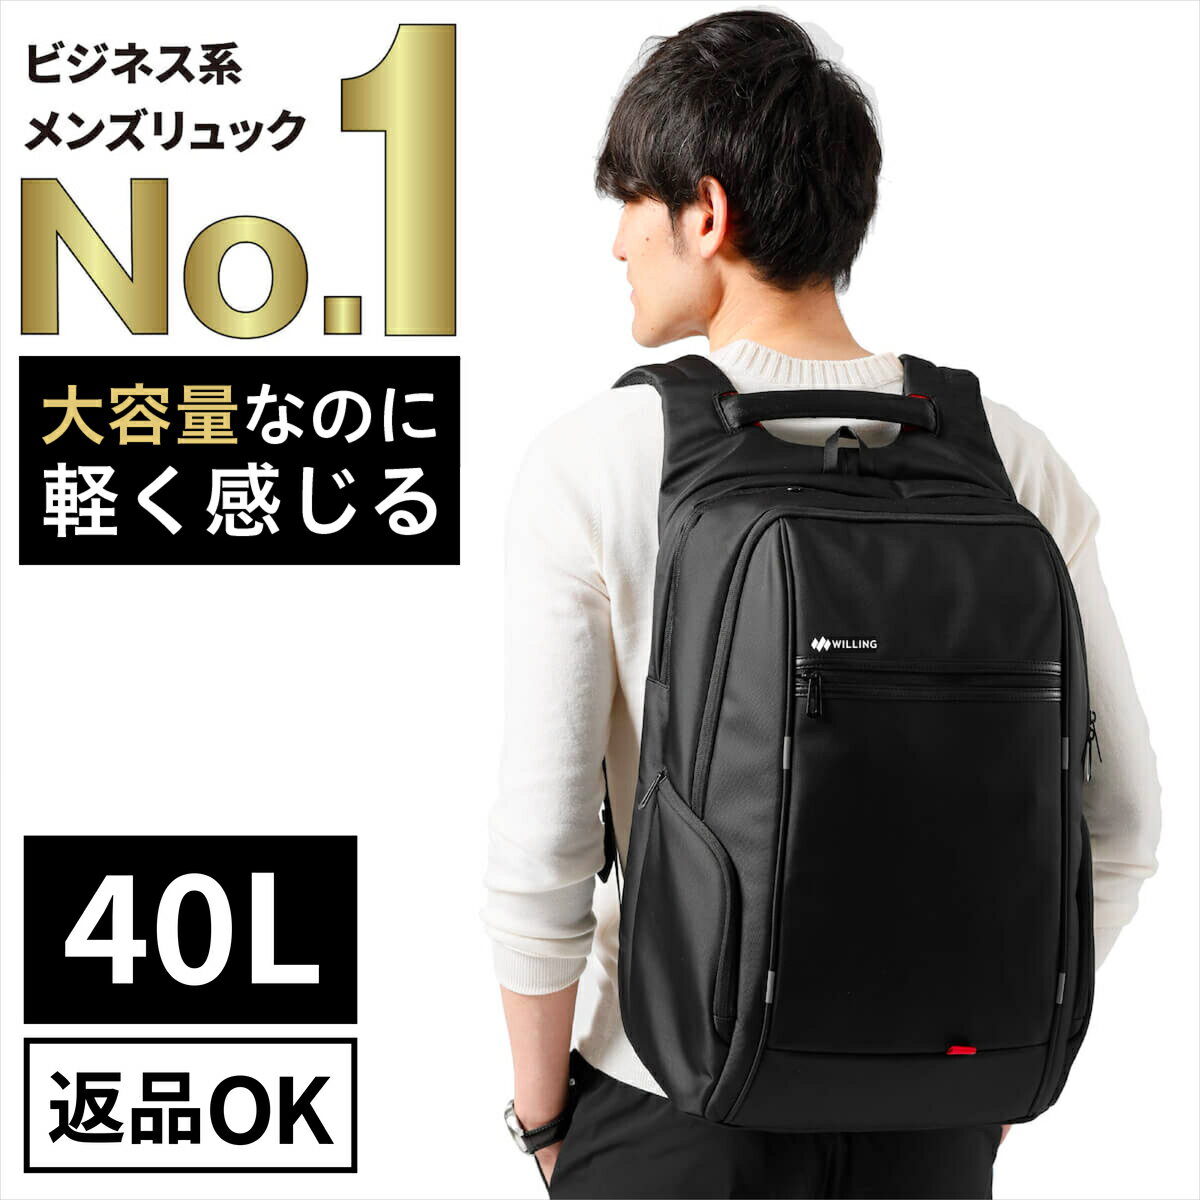 メンズ大容量バッグパック 長期旅行に使い勝手のいい機能的なリュックのおすすめランキング キテミヨ Kitemiyo